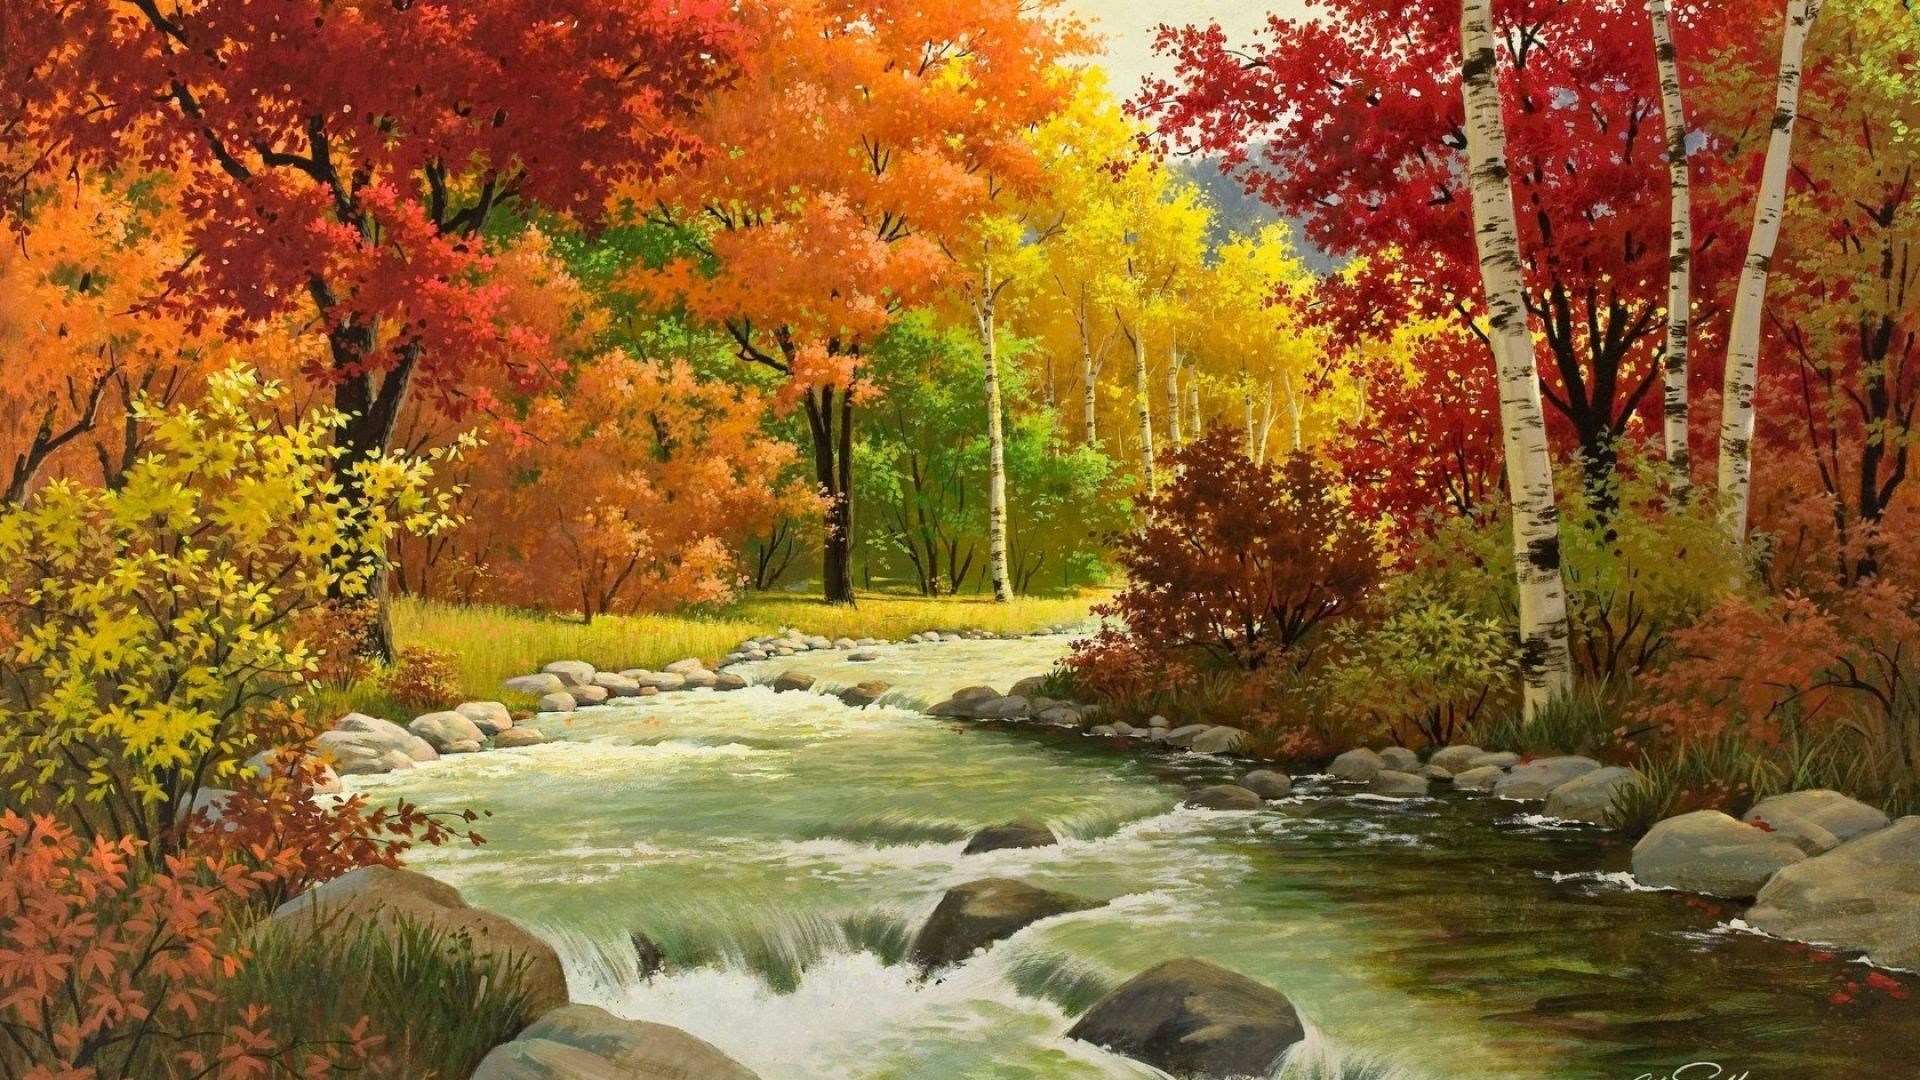 Download Wallpaper 1920x1080 Autumn, Landscape, Painting, River ...